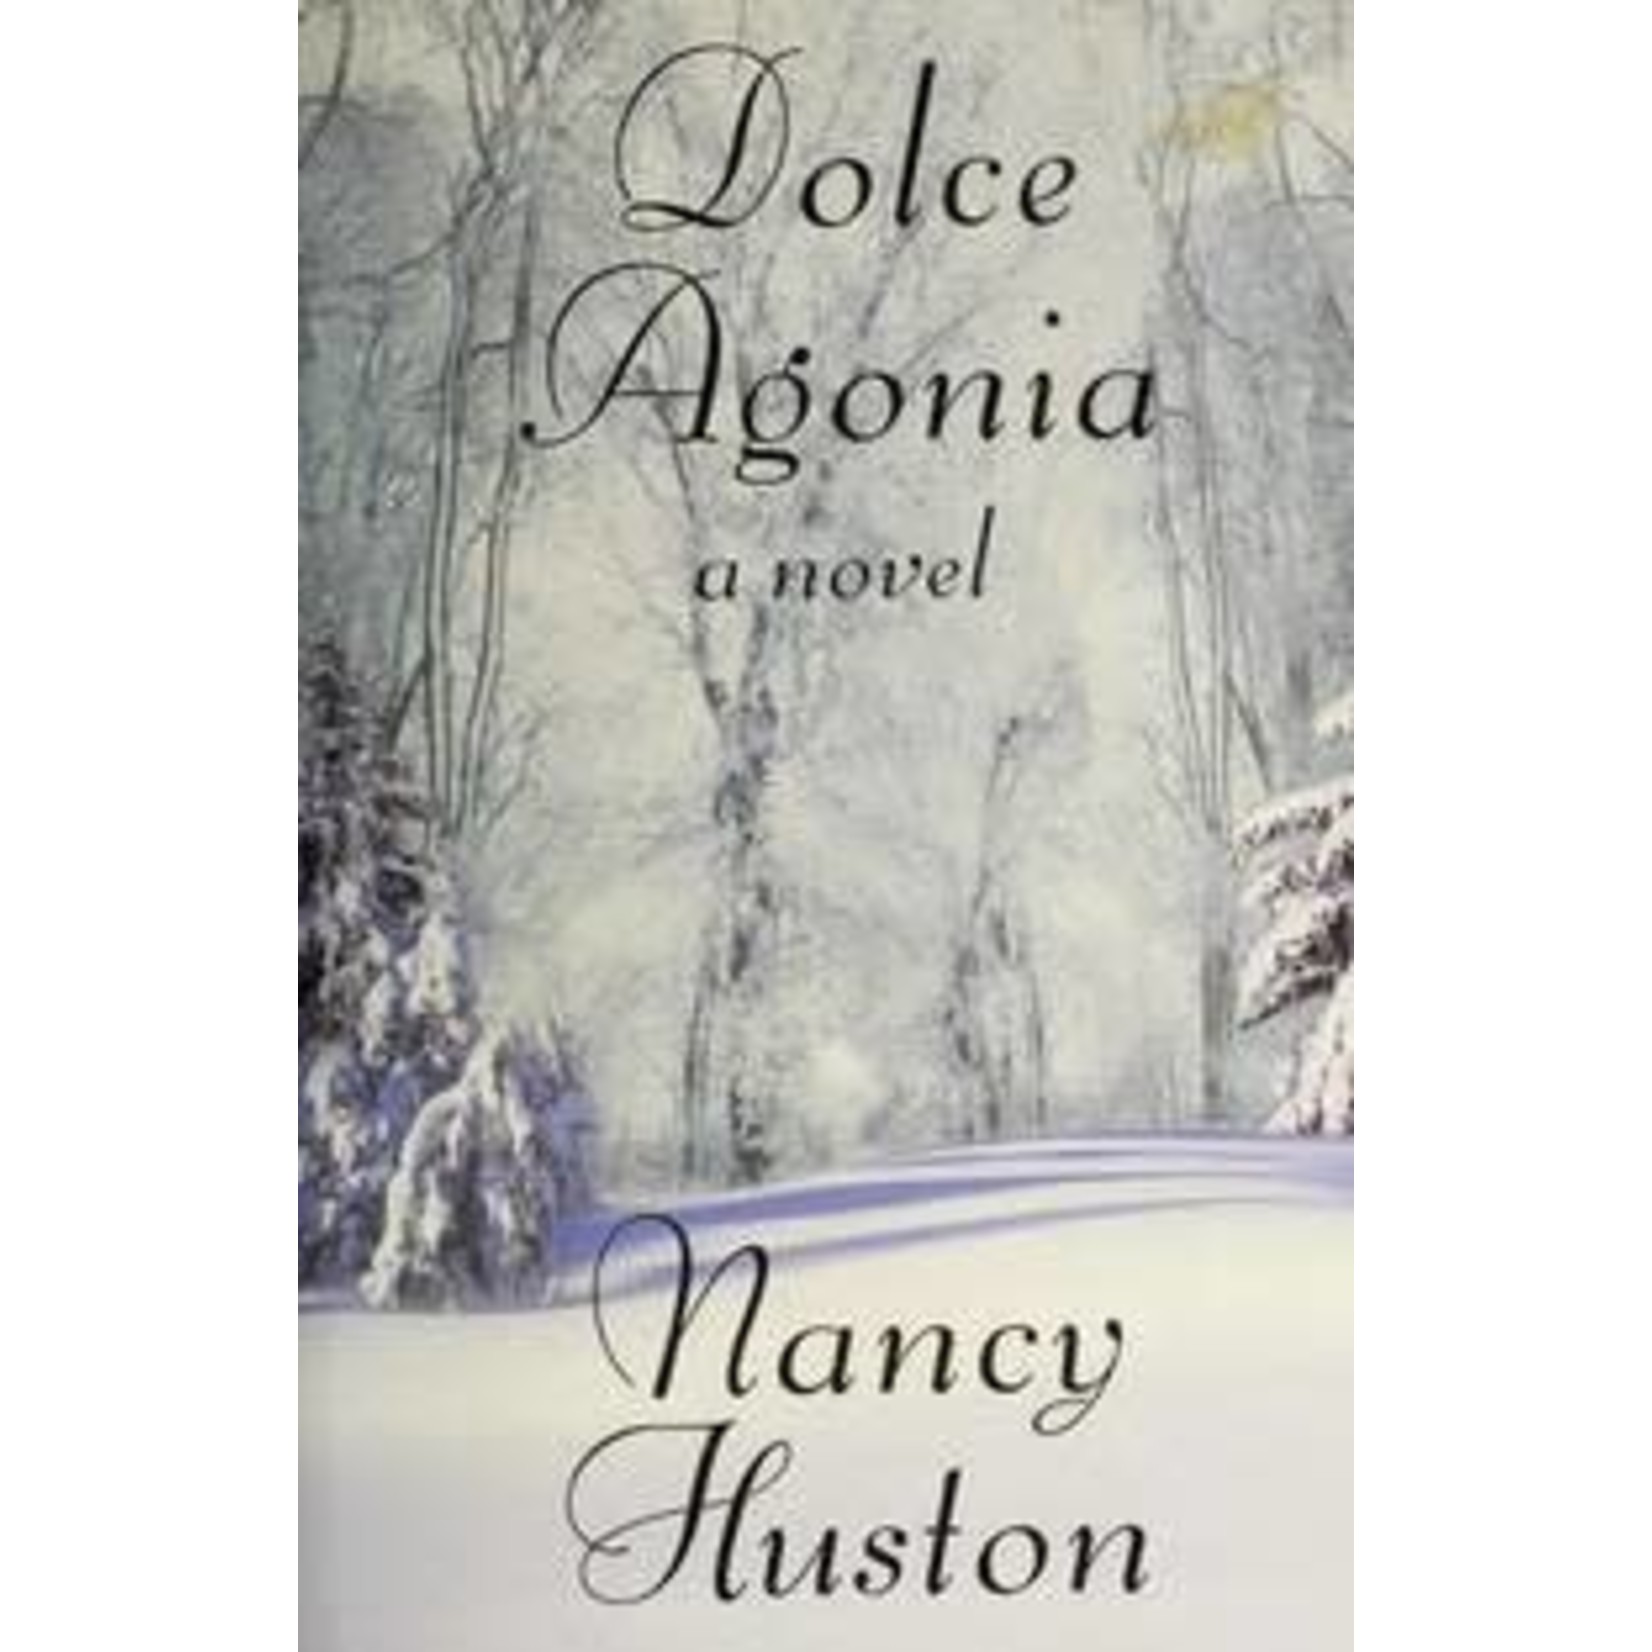 Huston, Nancy Huston, Nancy (FI) - Dolce Agonia (HC)